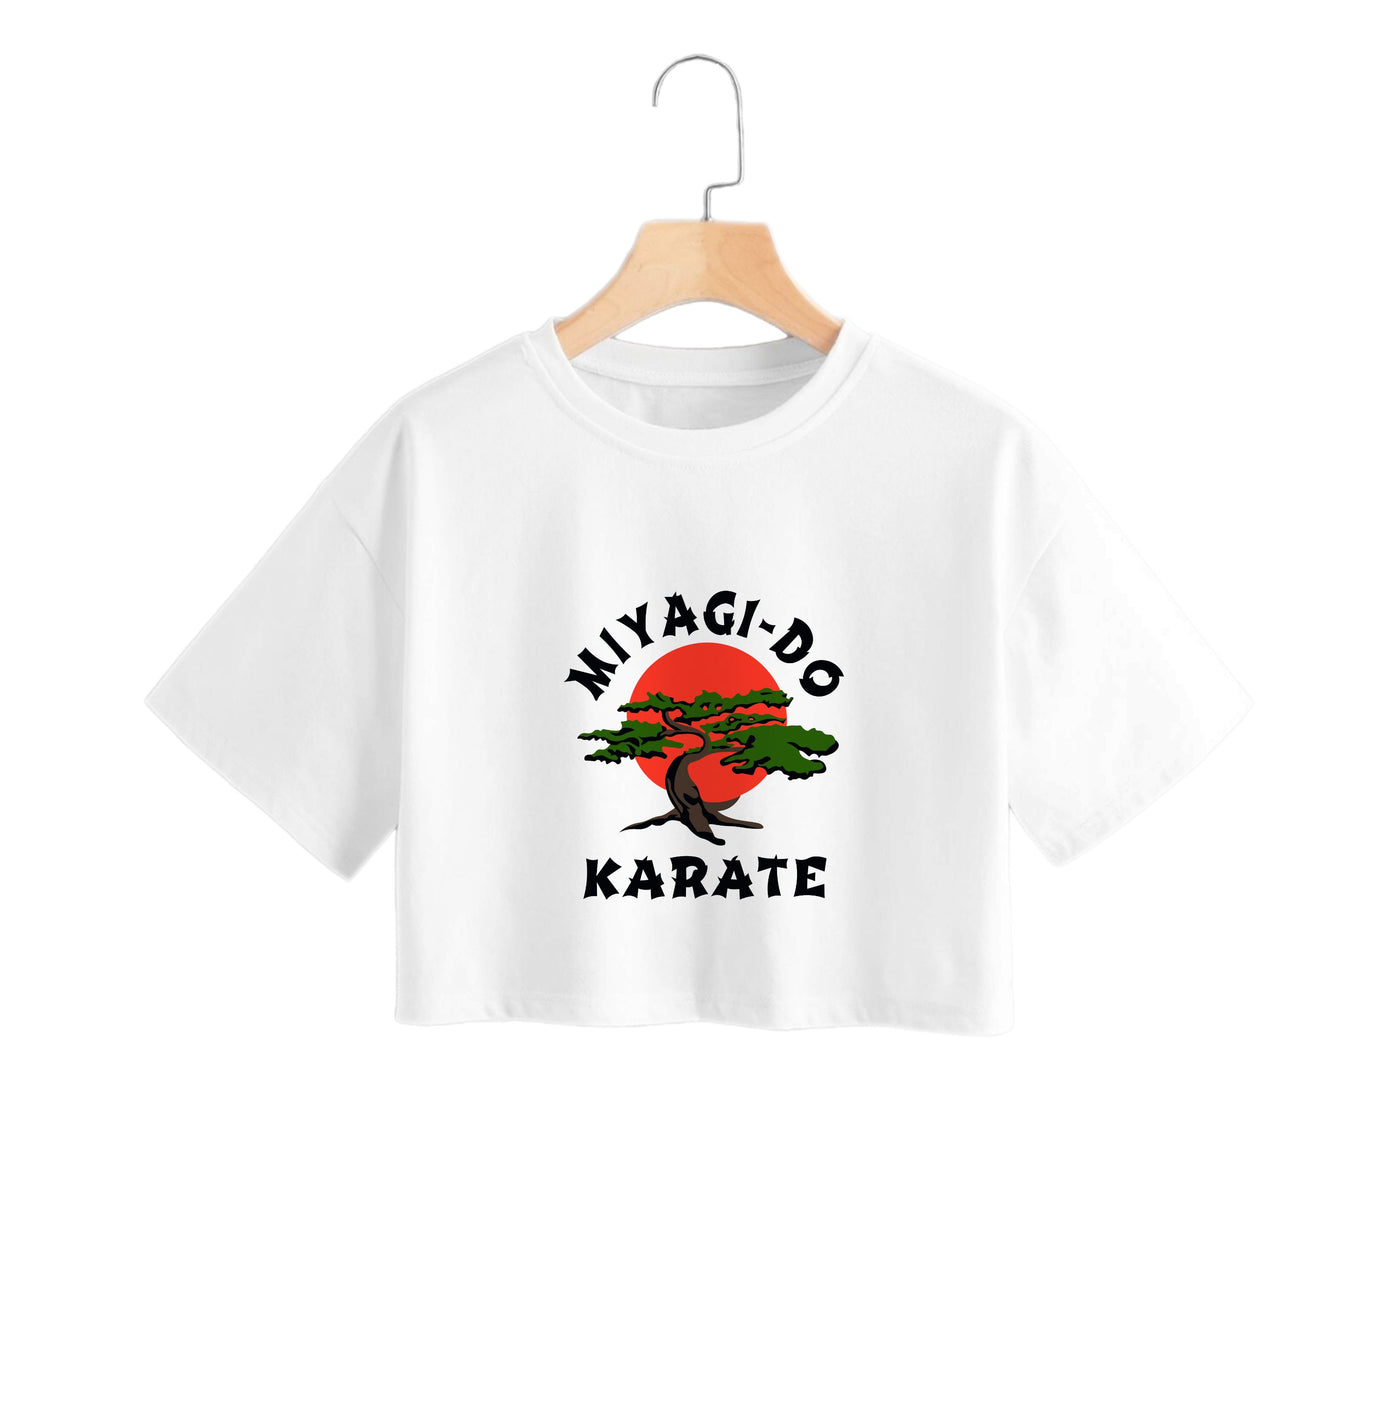 Miyagi-do Karate - Cobra Kai Crop Top